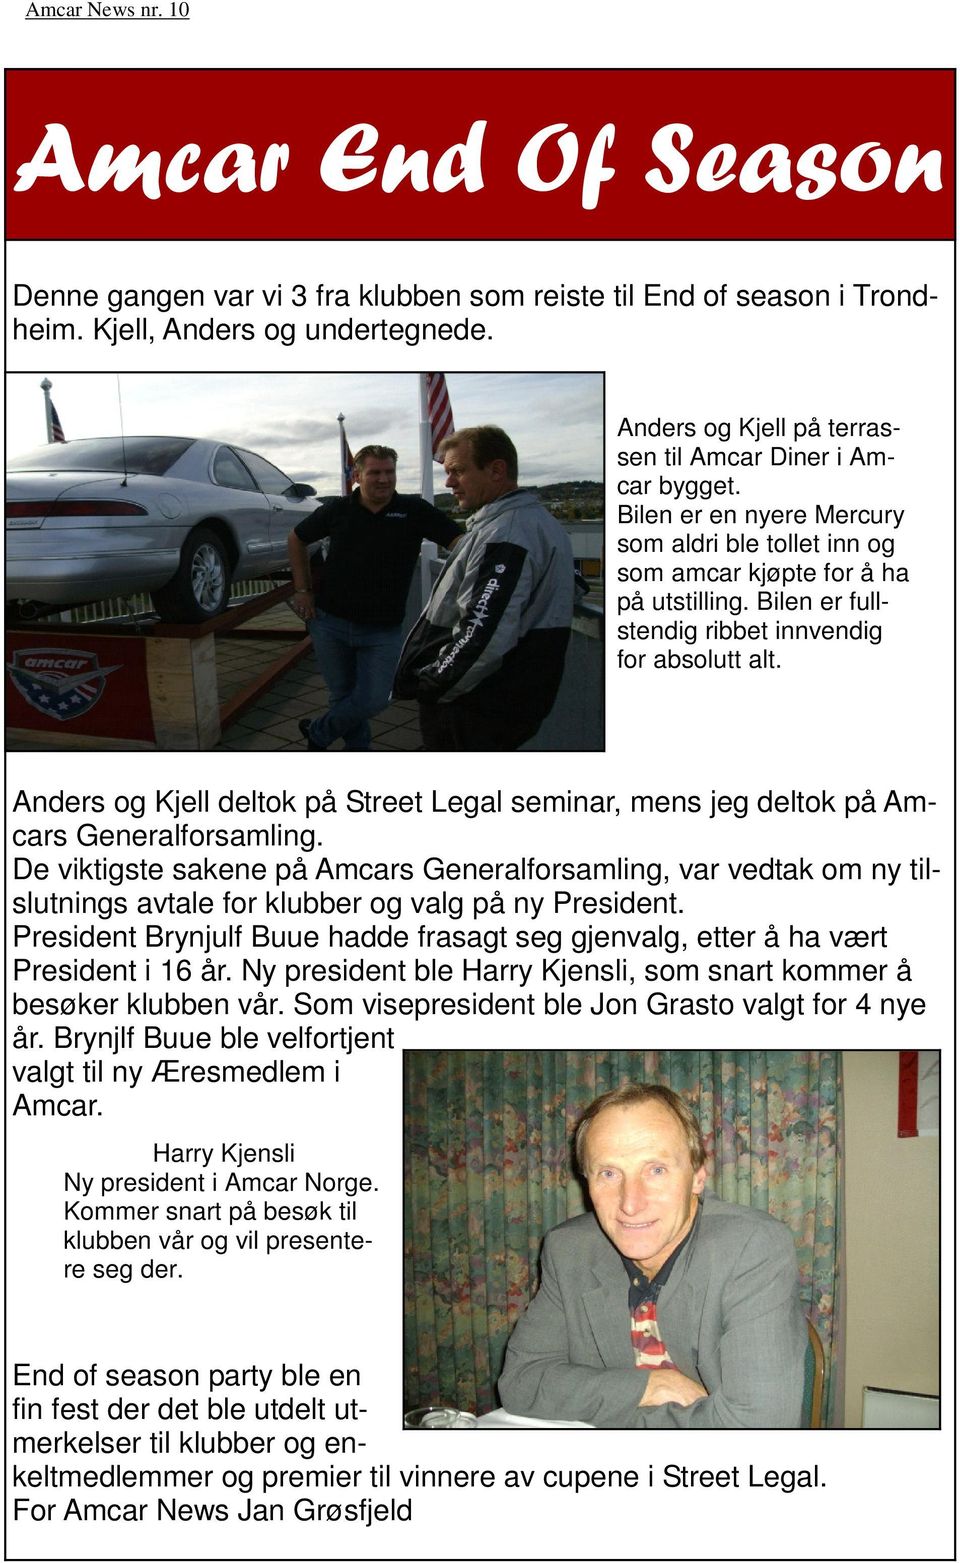 Anders og Kjell deltok på Street Legal seminar, mens jeg deltok på Amcars Generalforsamling.